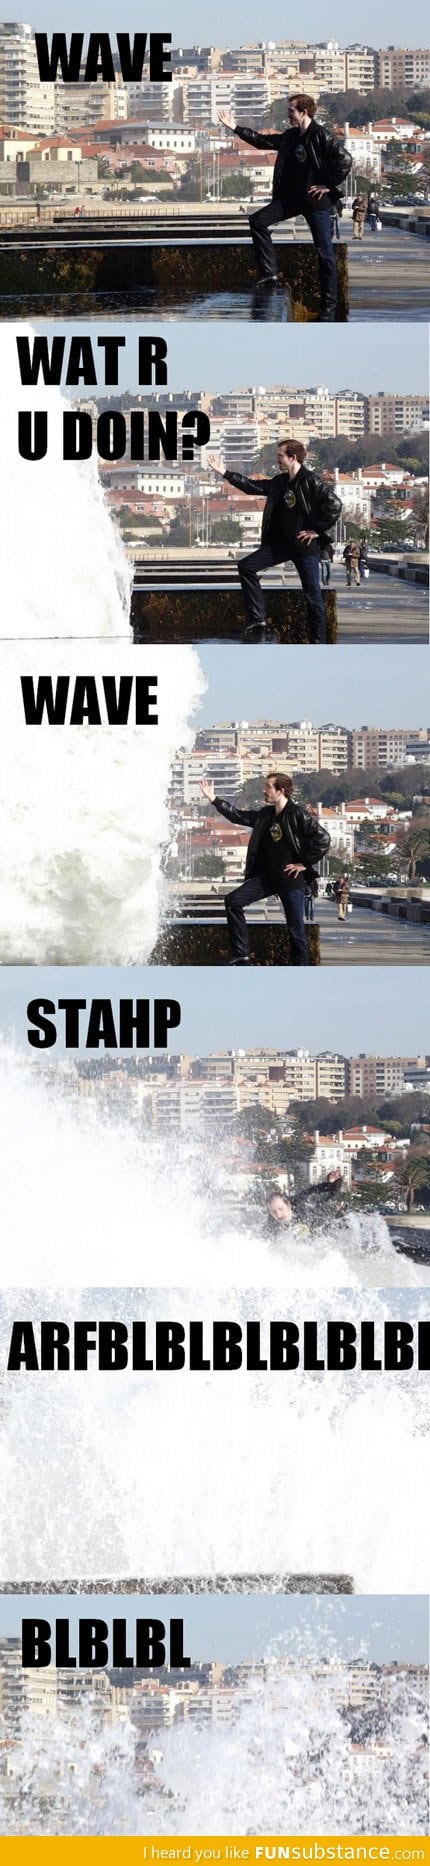 Wave, stahp